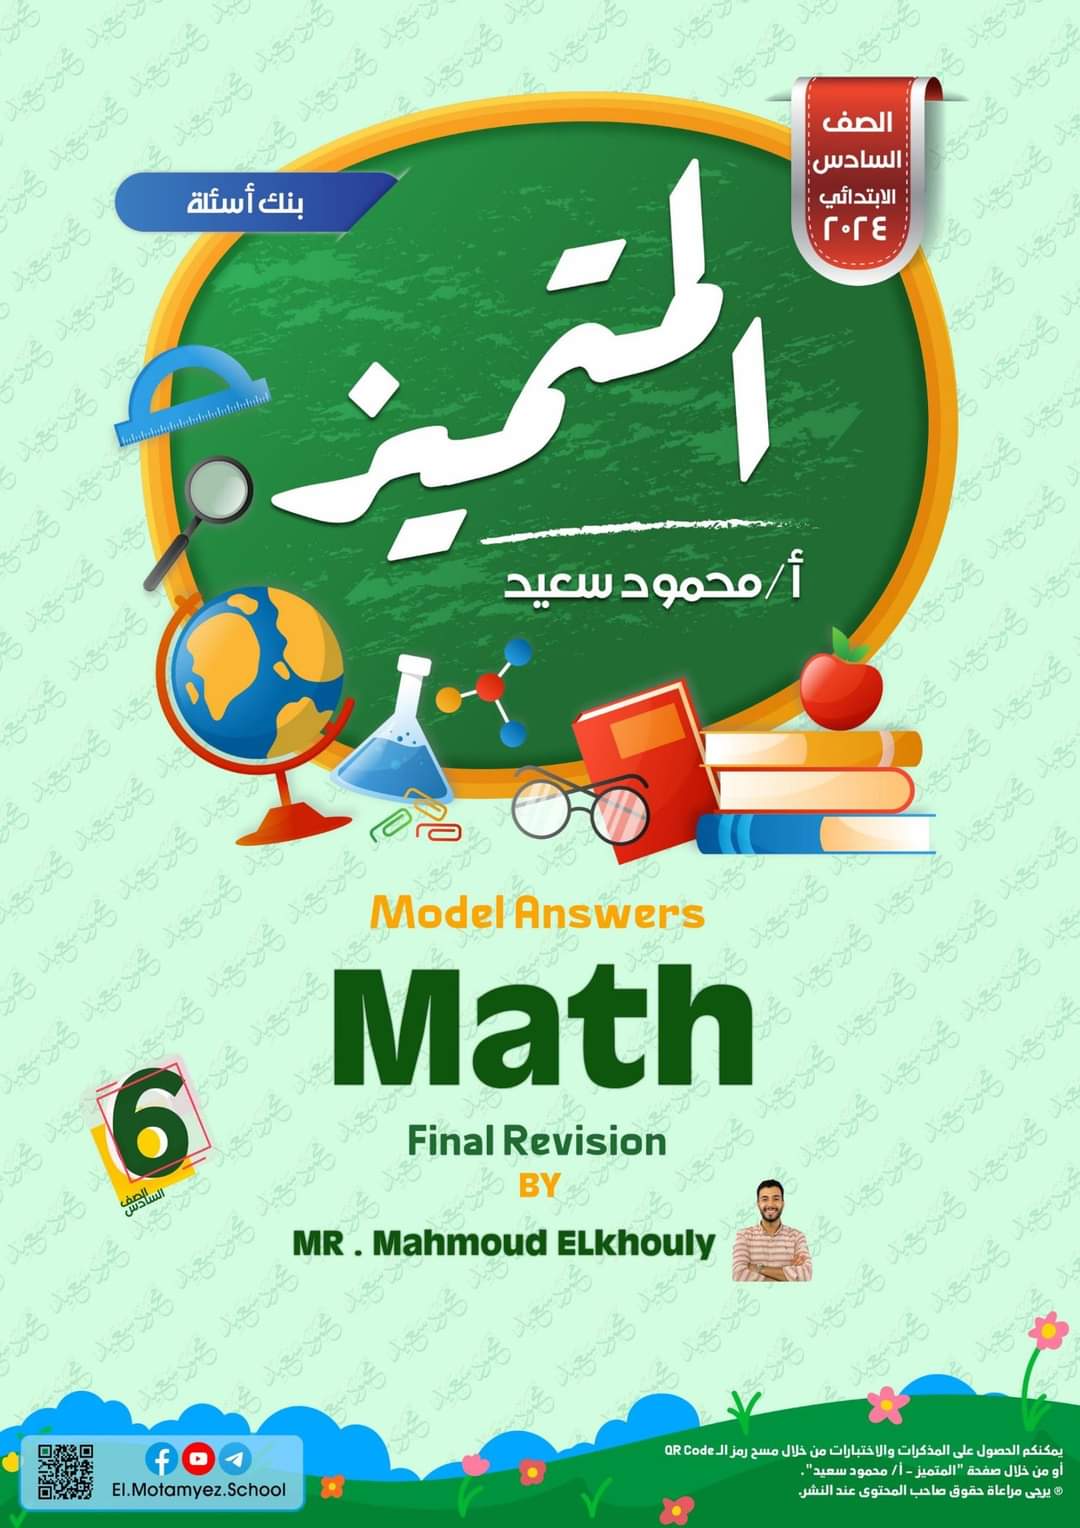 مراجعة المتميز النهائية ماث math الصف السادس الابتدائي لغات الترم الثاني بالاجابات - تحميل مذكرات المتميز